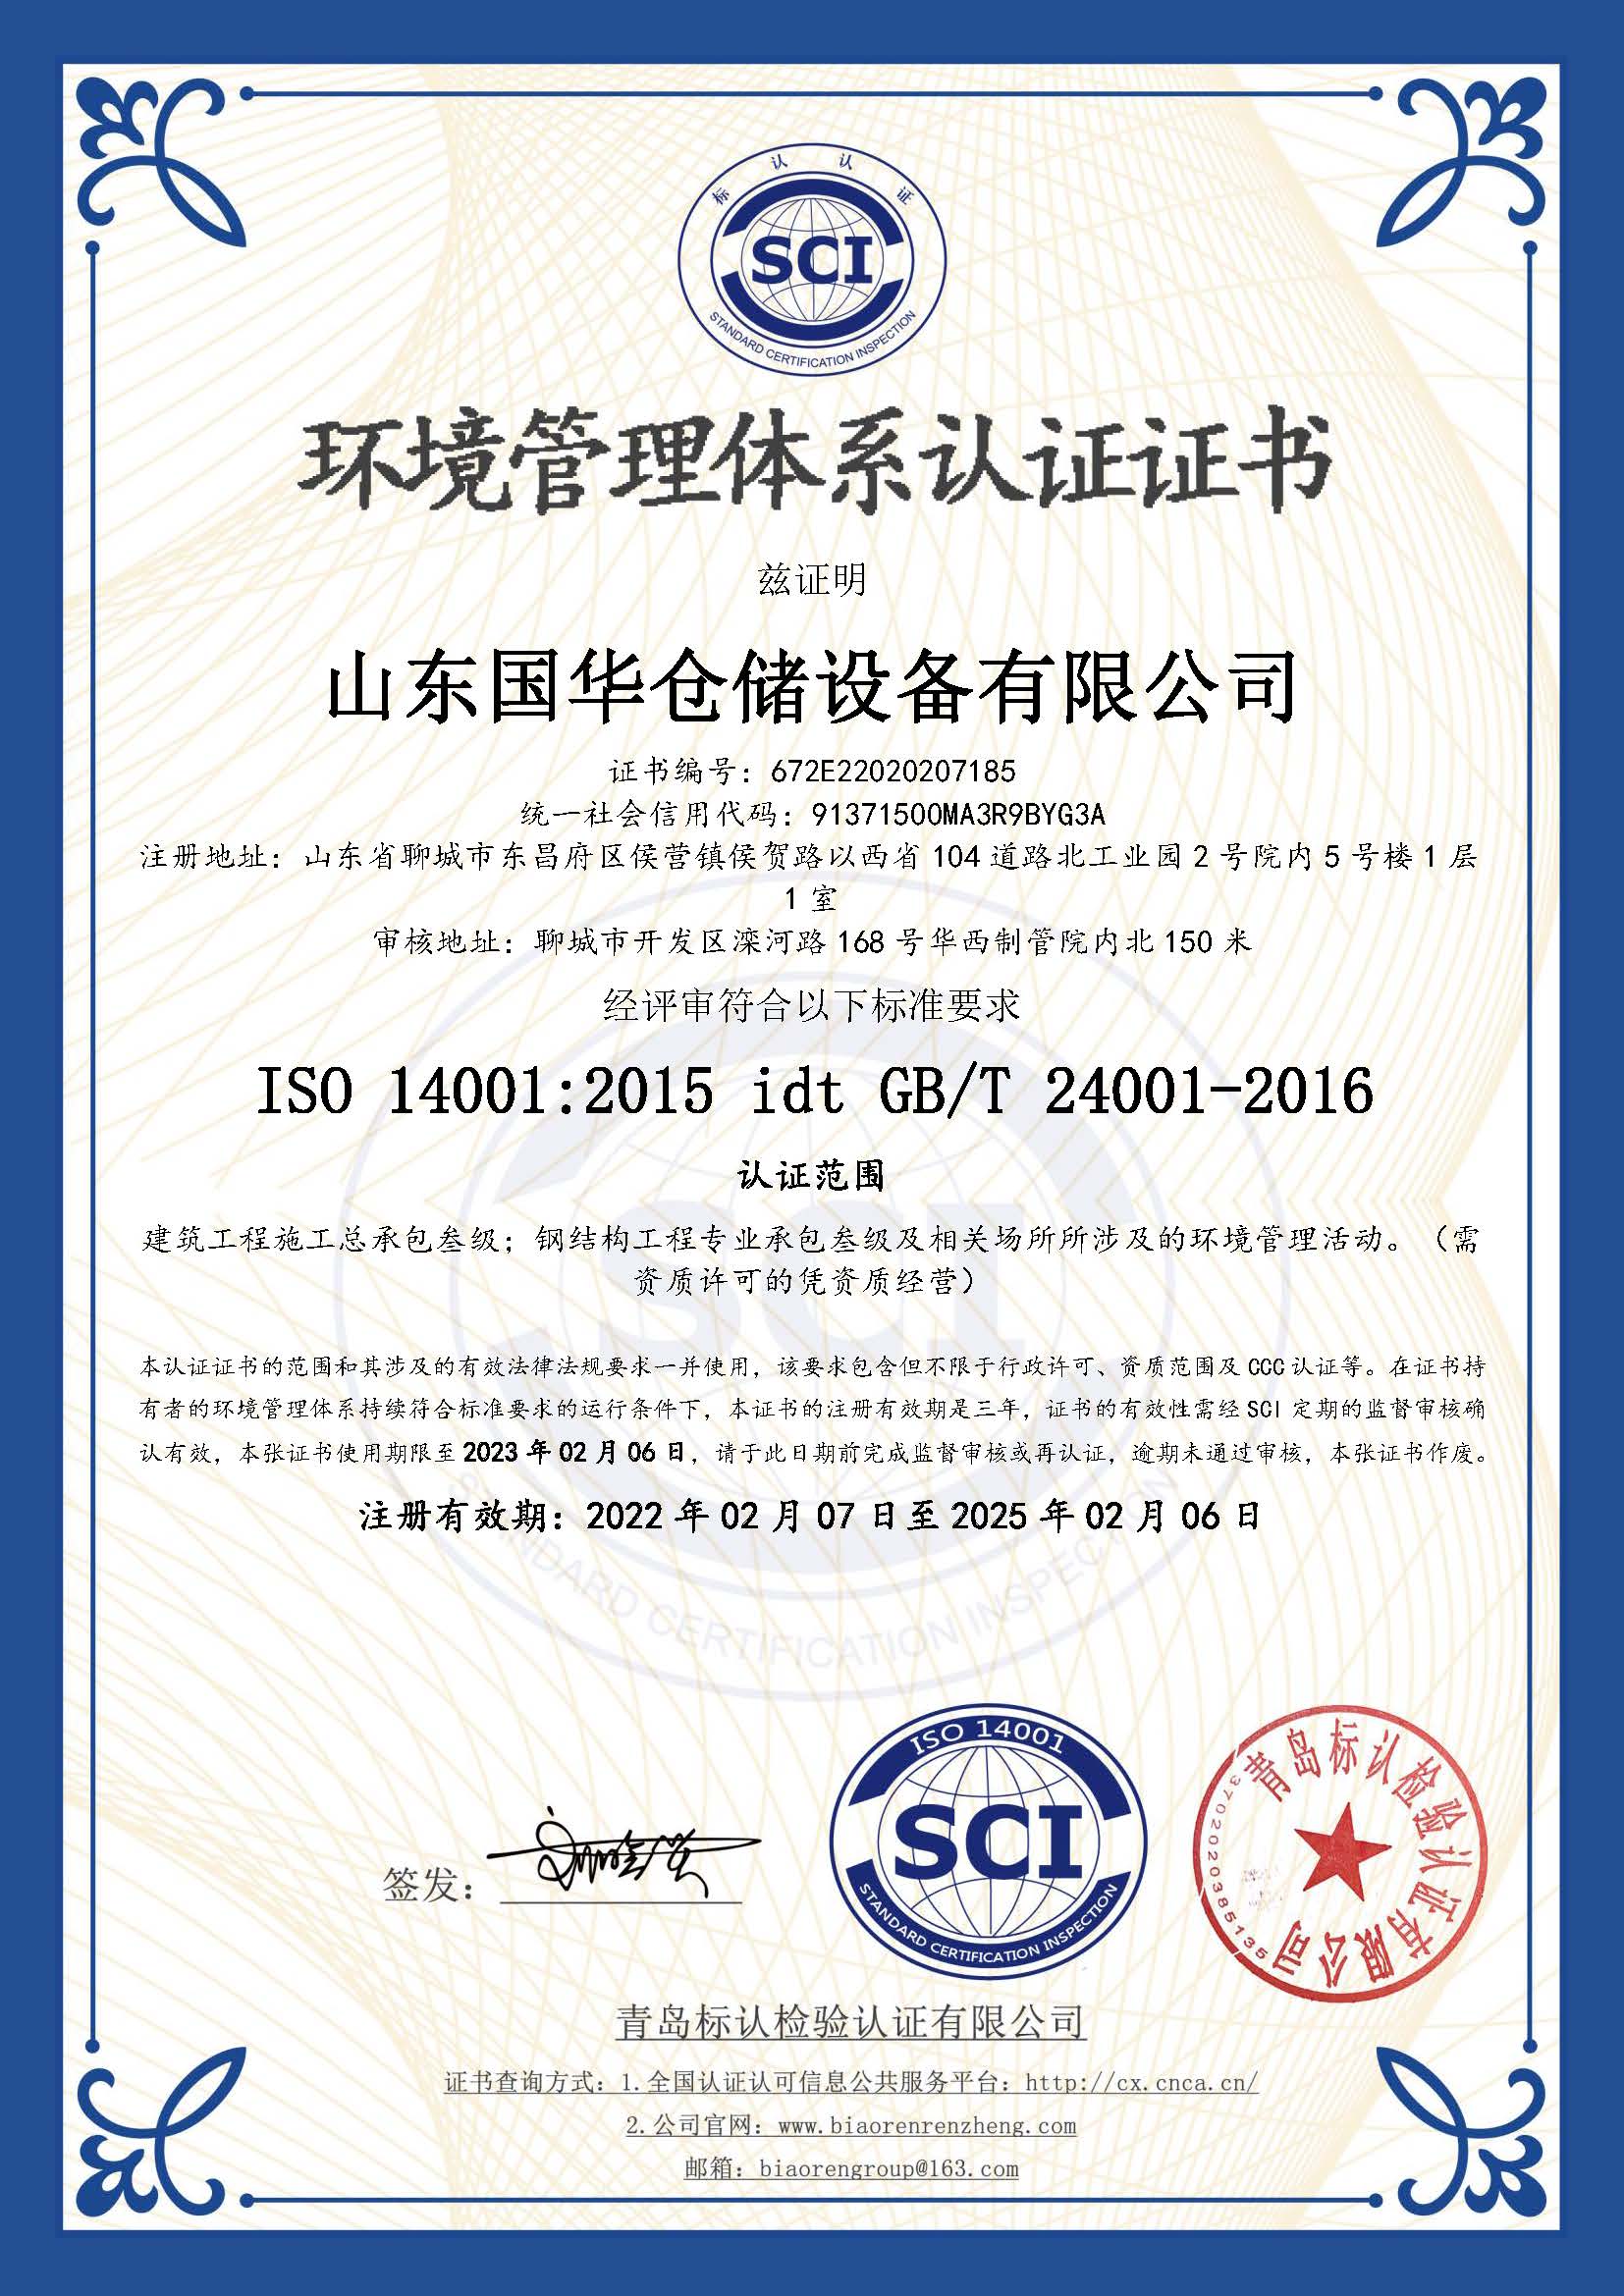 秦皇岛钢板仓环境管理体系认证证书